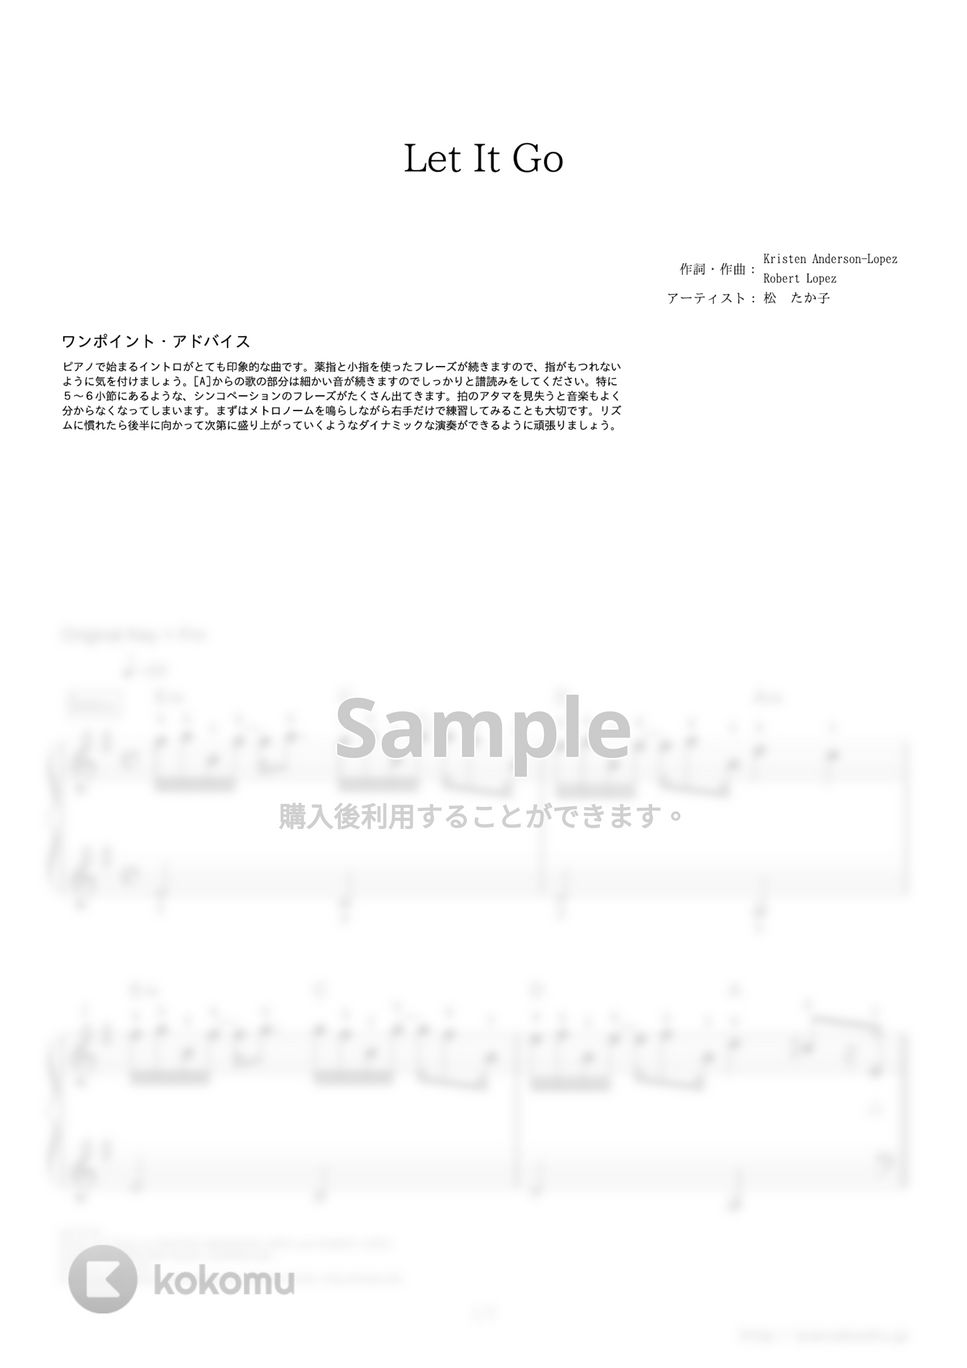 松たか子 - レット・イット・ゴー (映画『アナと雪の女王』劇中歌) by ピアノの本棚